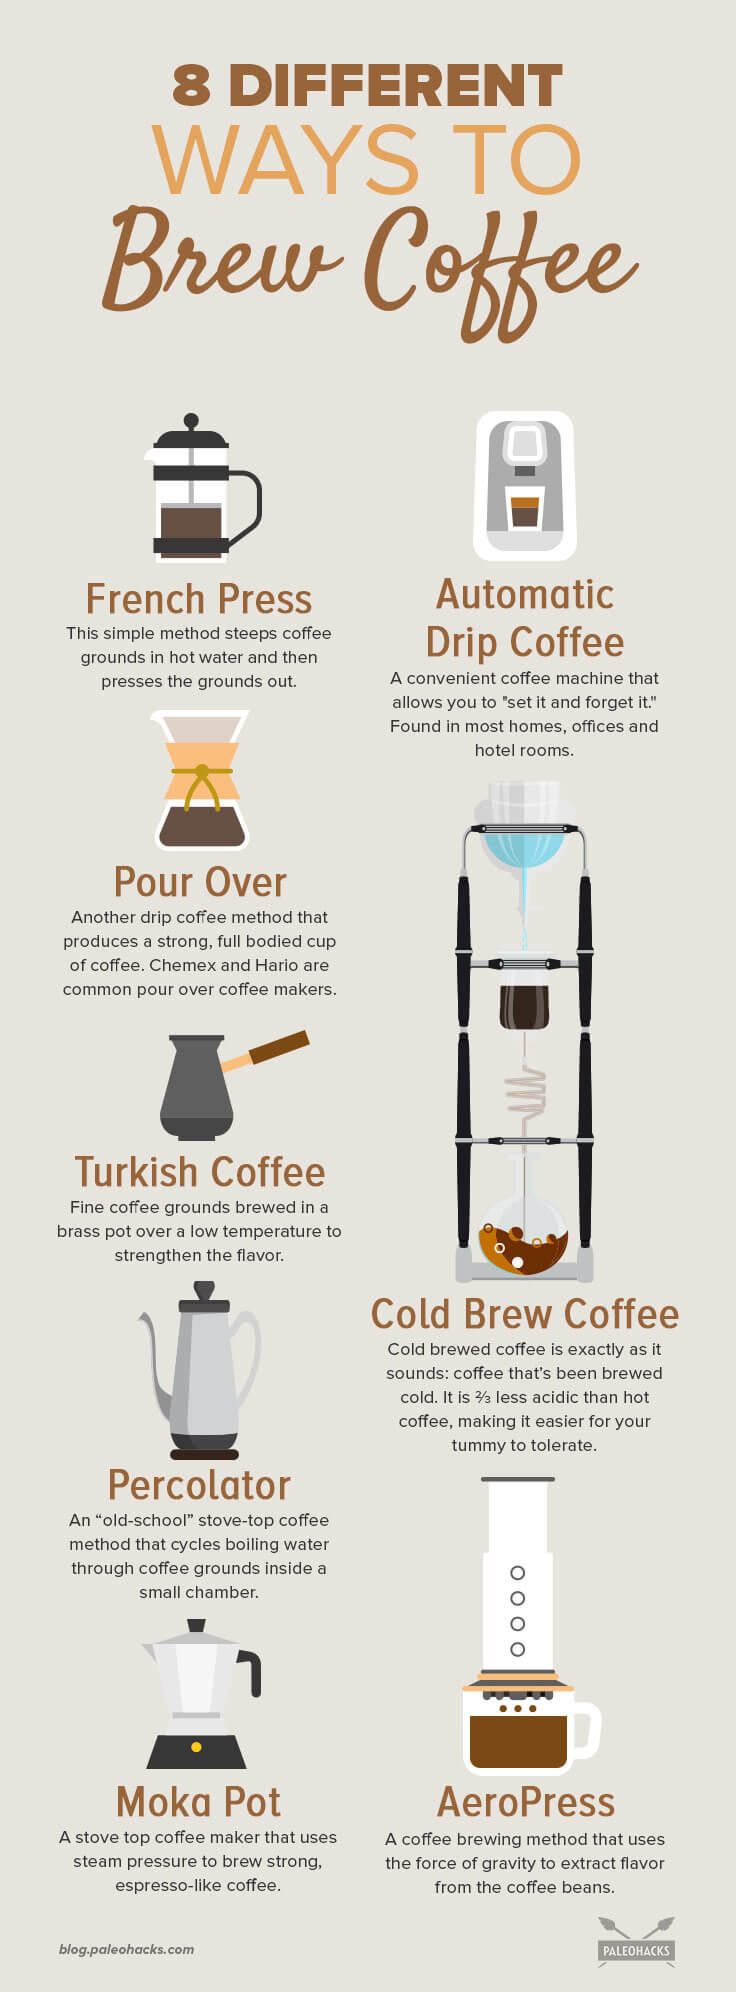 Coffee brewing methods  big scale by Olga Zelenska on Dribbble